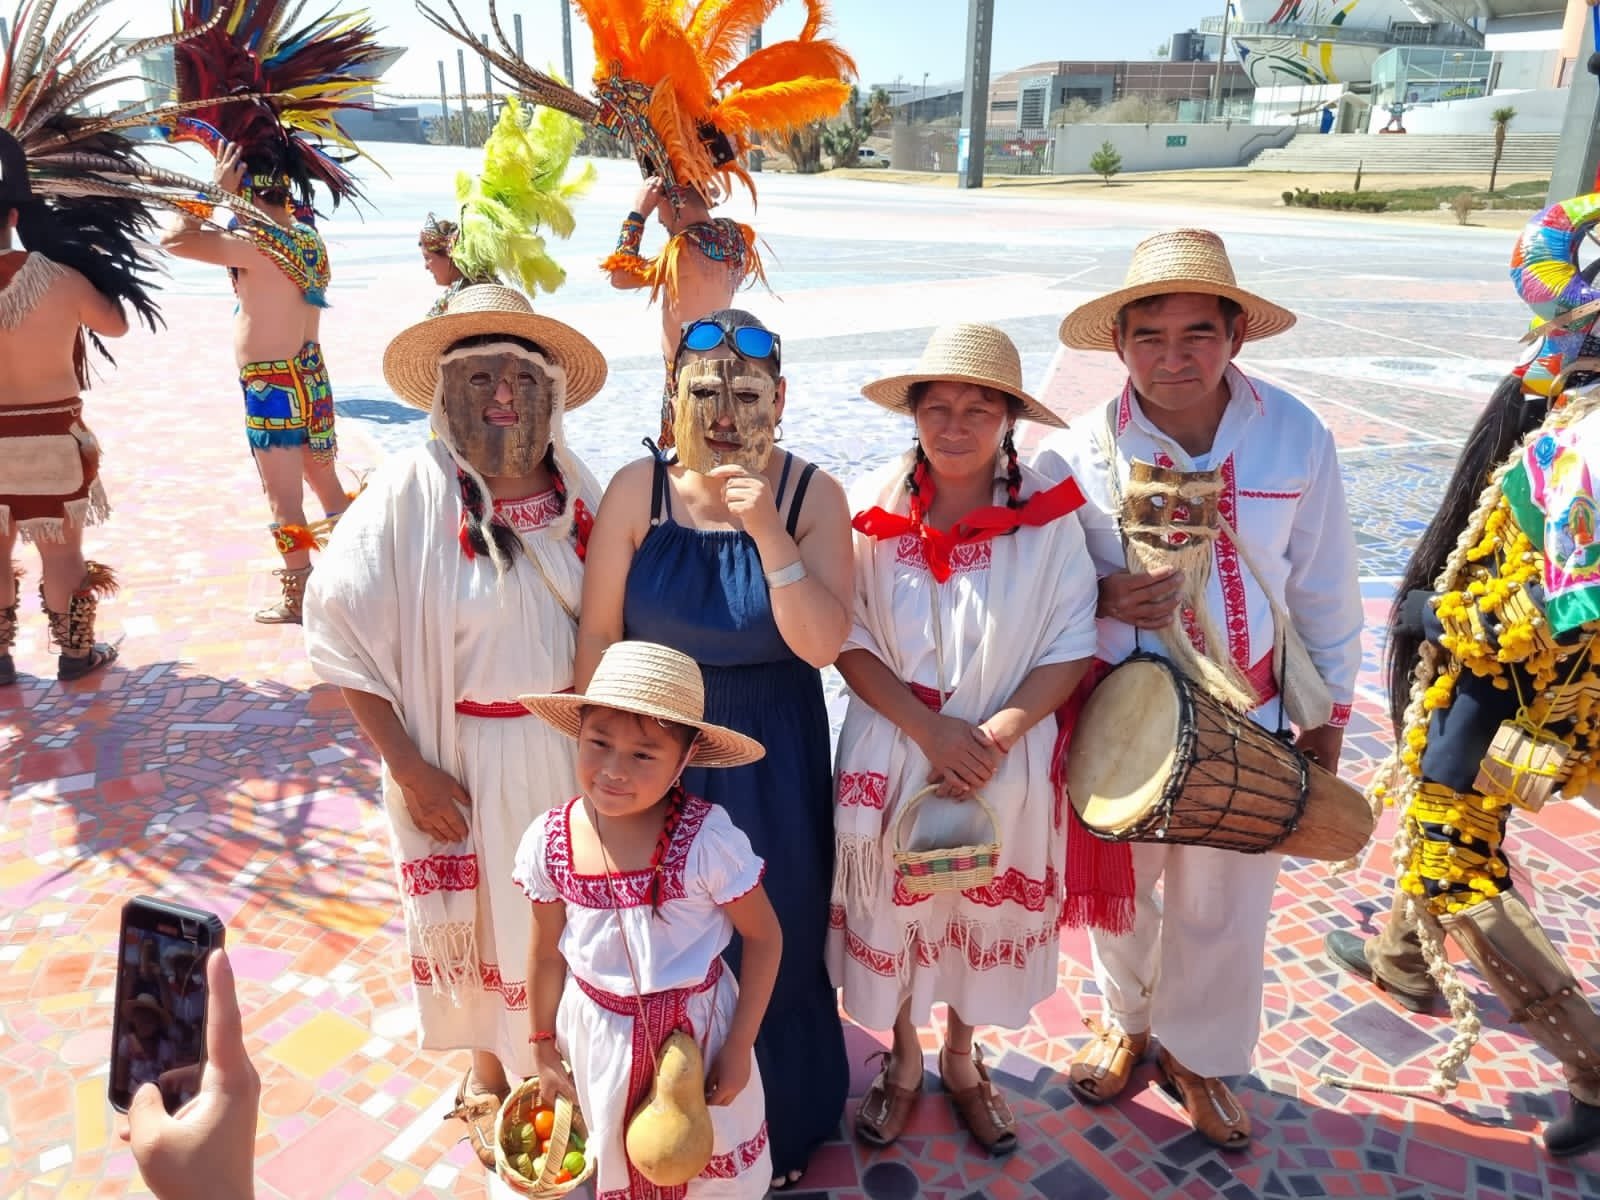 Alistan fiestas de carnaval y Pachuca, adelanta una pequeña muestra